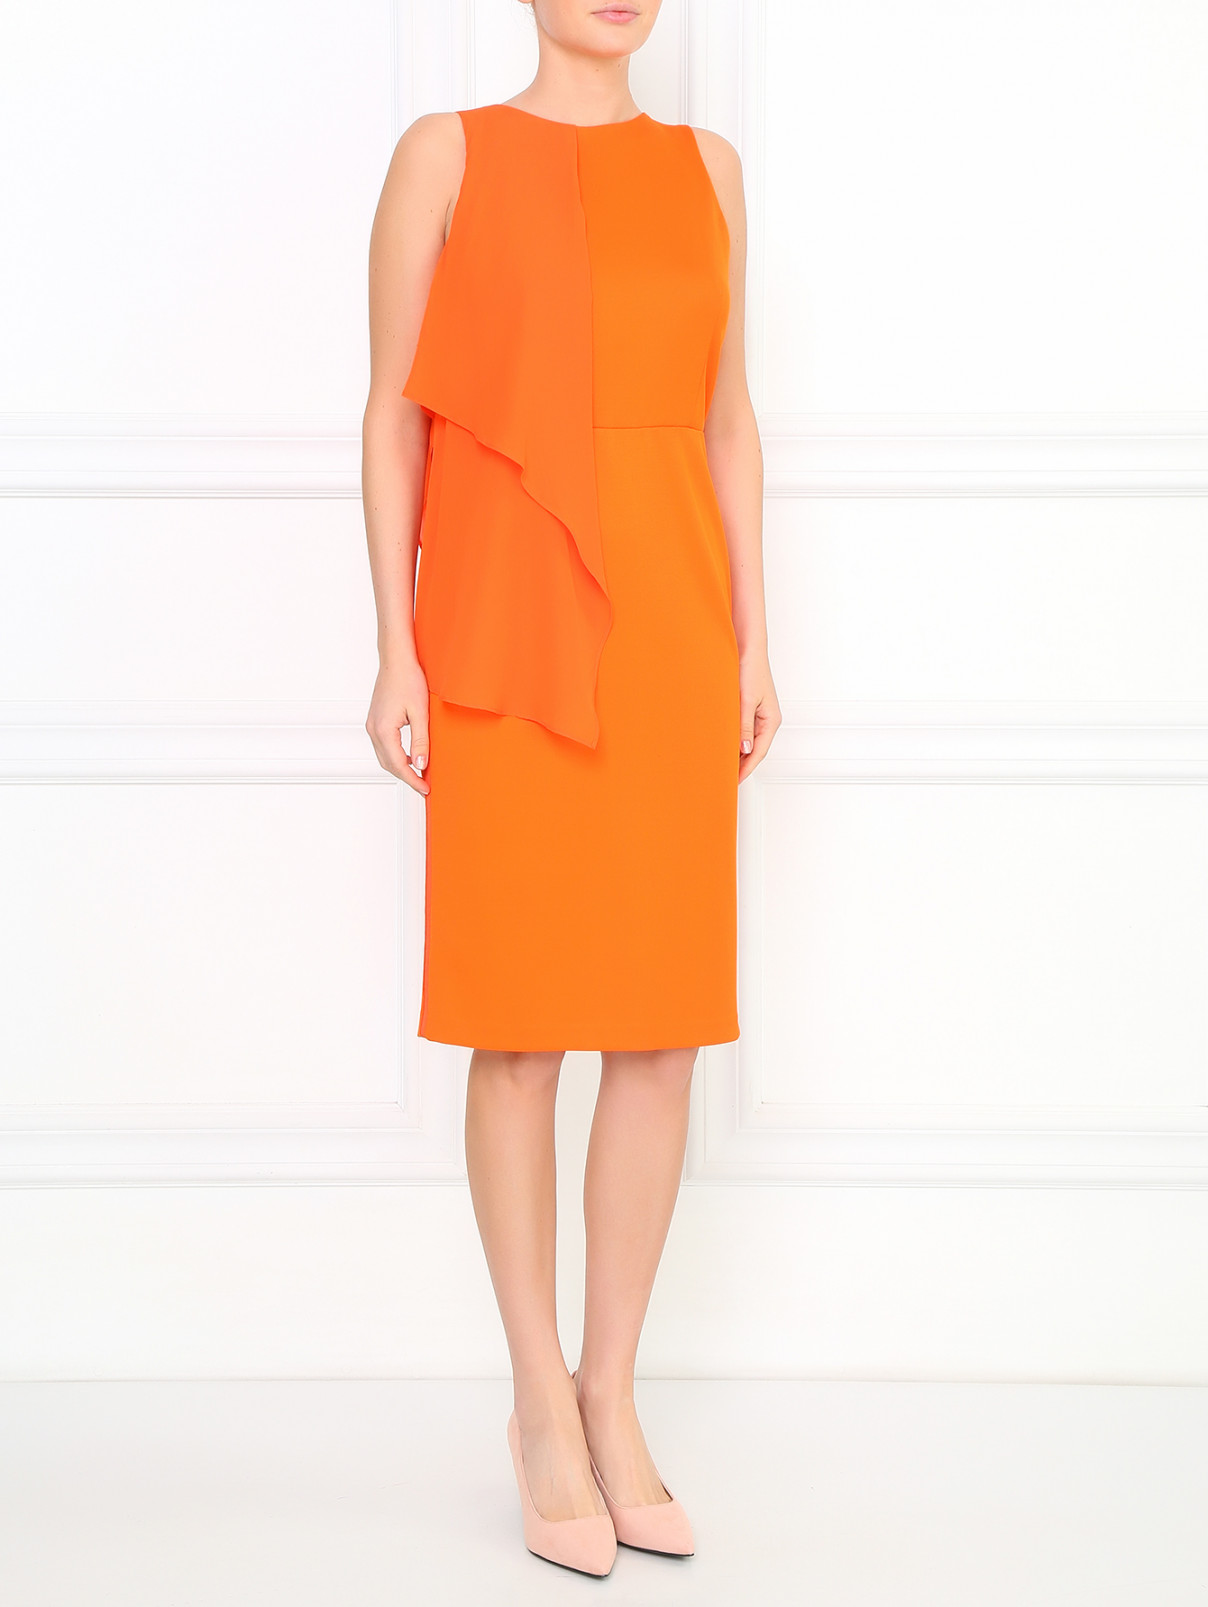 Платье-мини без рукавов с драпировкой Sportmax  –  Модель Общий вид  – Цвет:  Оранжевый